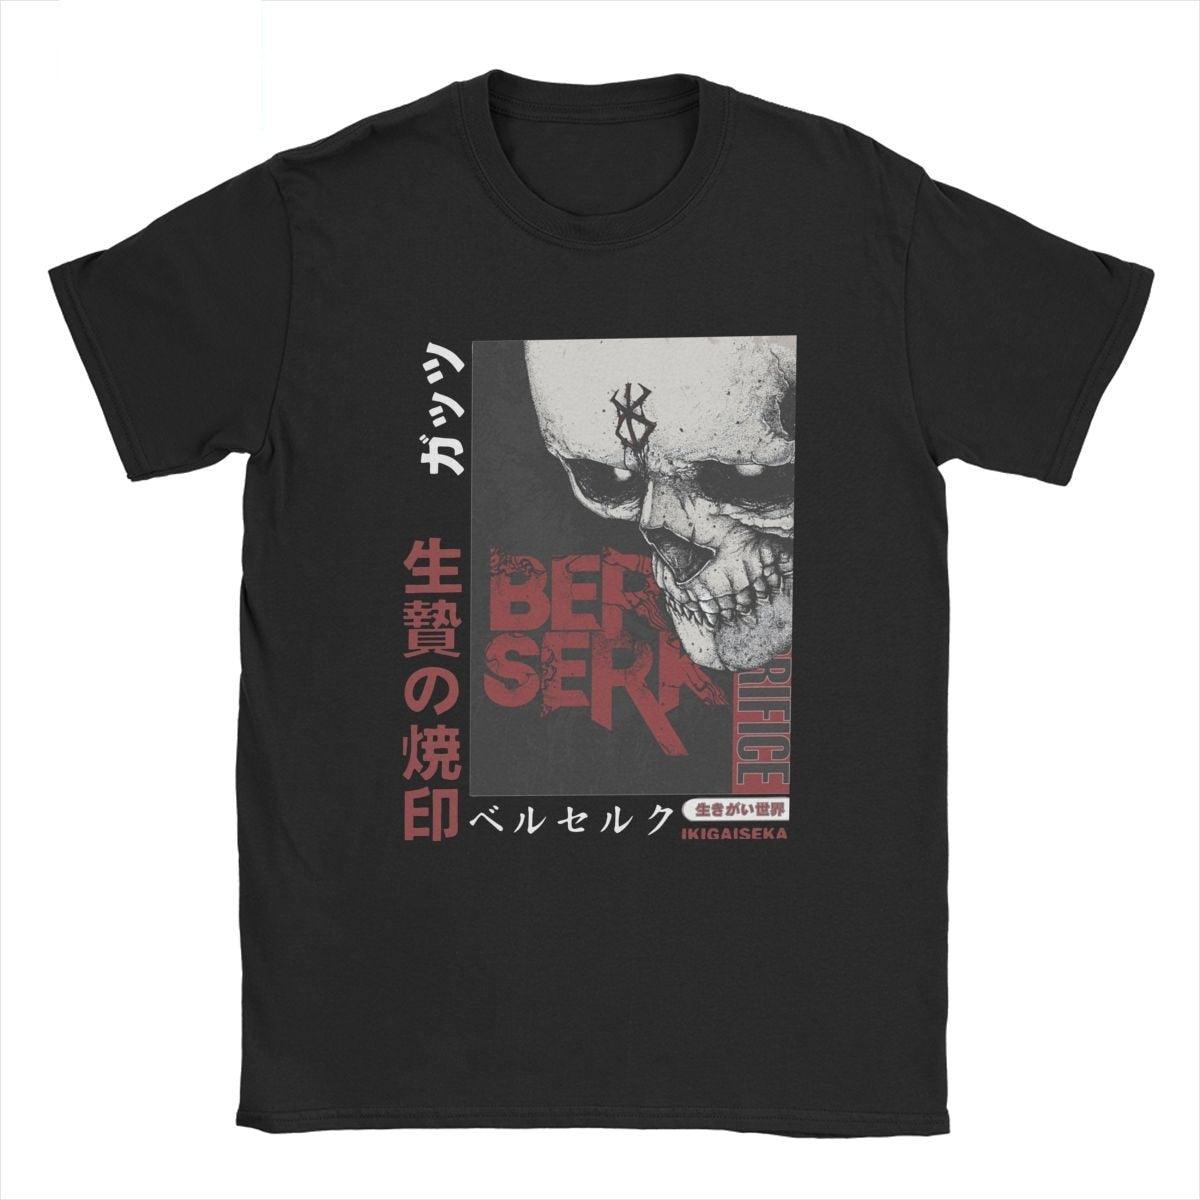 Berserk Guts Brand Of Sacrifice T-Shirt - SantGrial